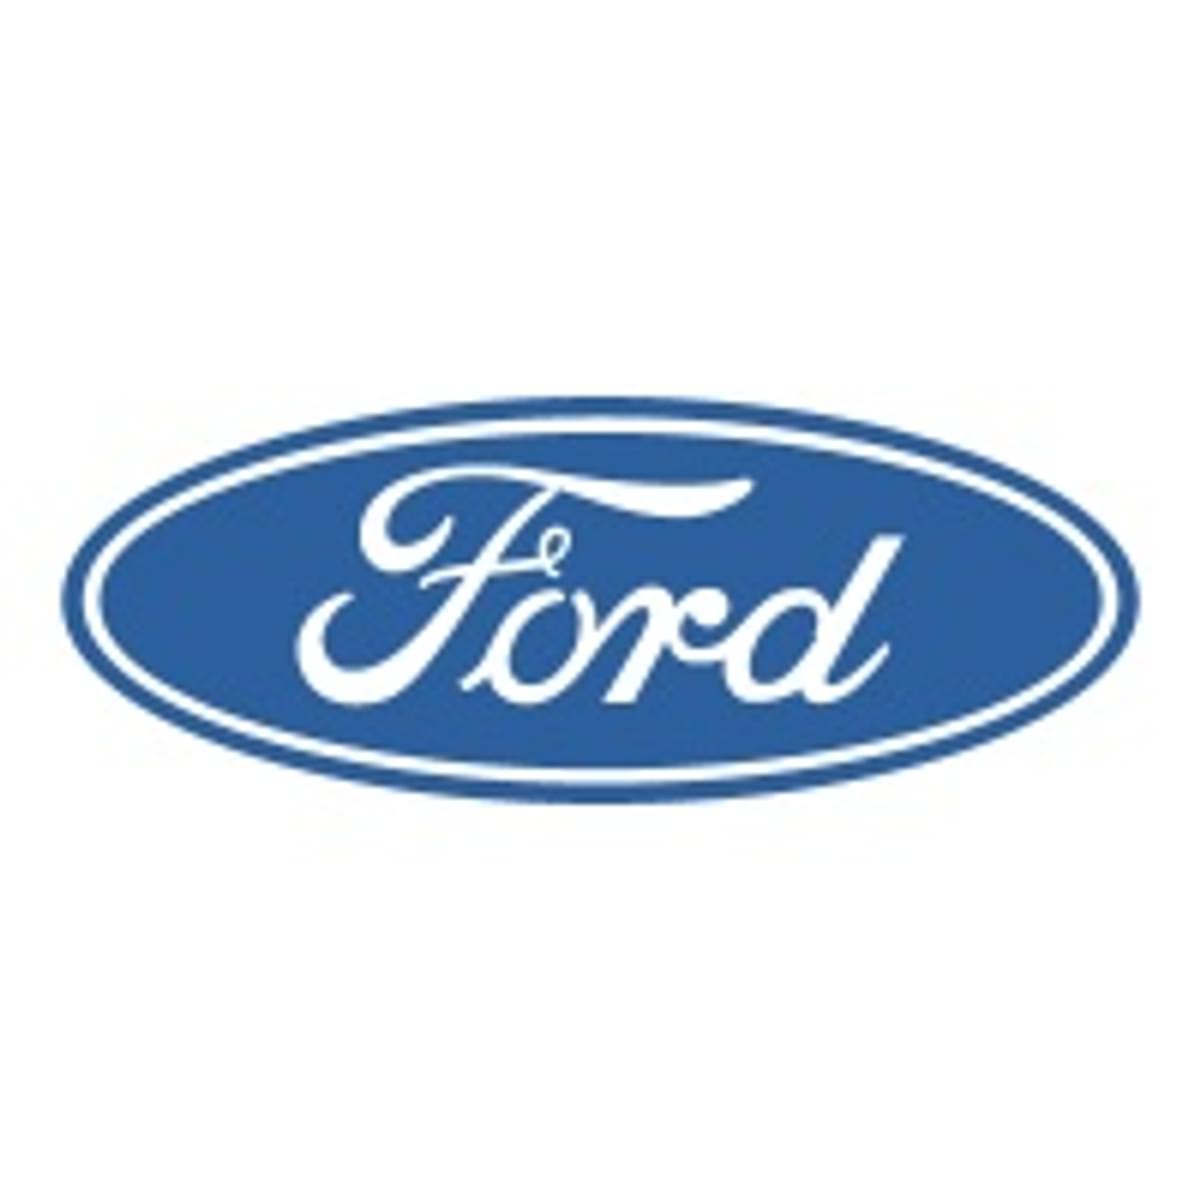 Ford investeert vier miljard dollar in zelfrijdende auto's image